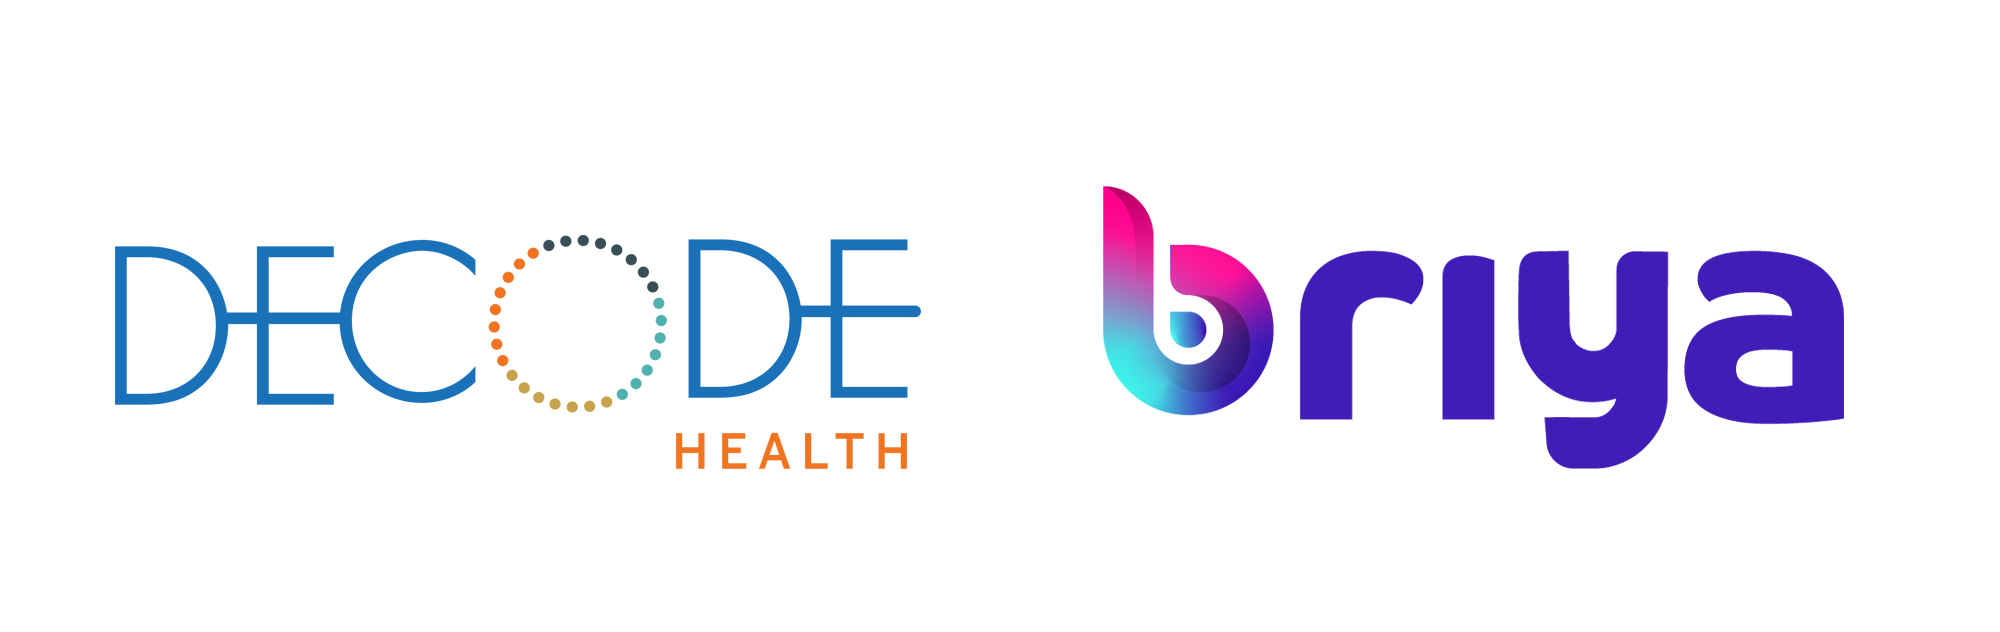 decode health and briya logos